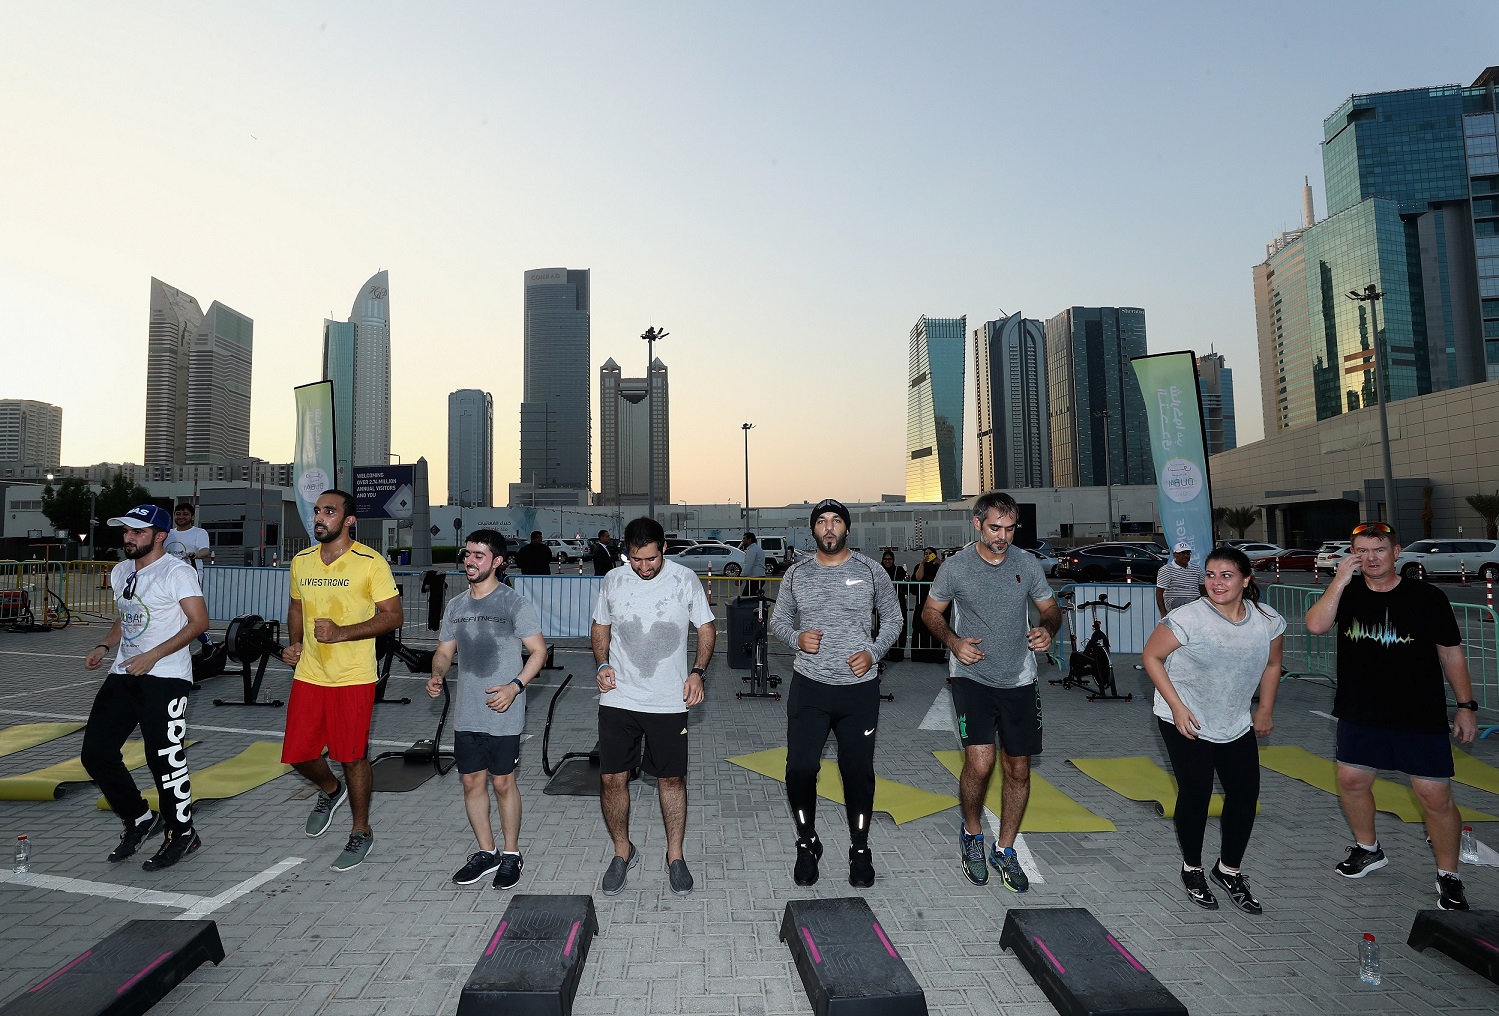 تحدي دبي للياقة يوفّر صالات رياضية مؤقتة في 75 موقعاً بالإمارة